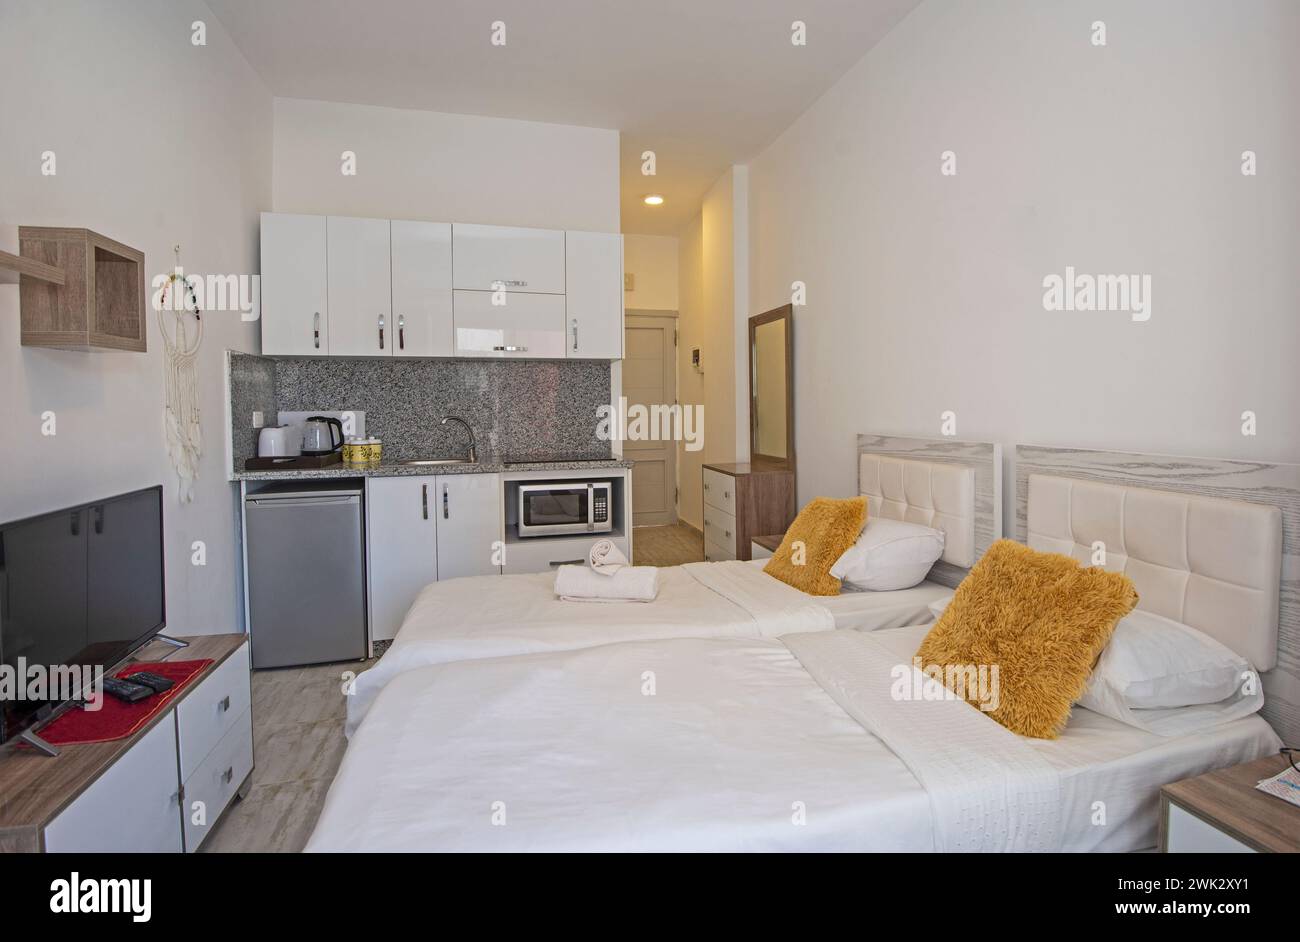 Décoration intérieure mobilier de luxe salon maison appartement chambre montrant meubles et lits jumeaux avec cuisine Banque D'Images